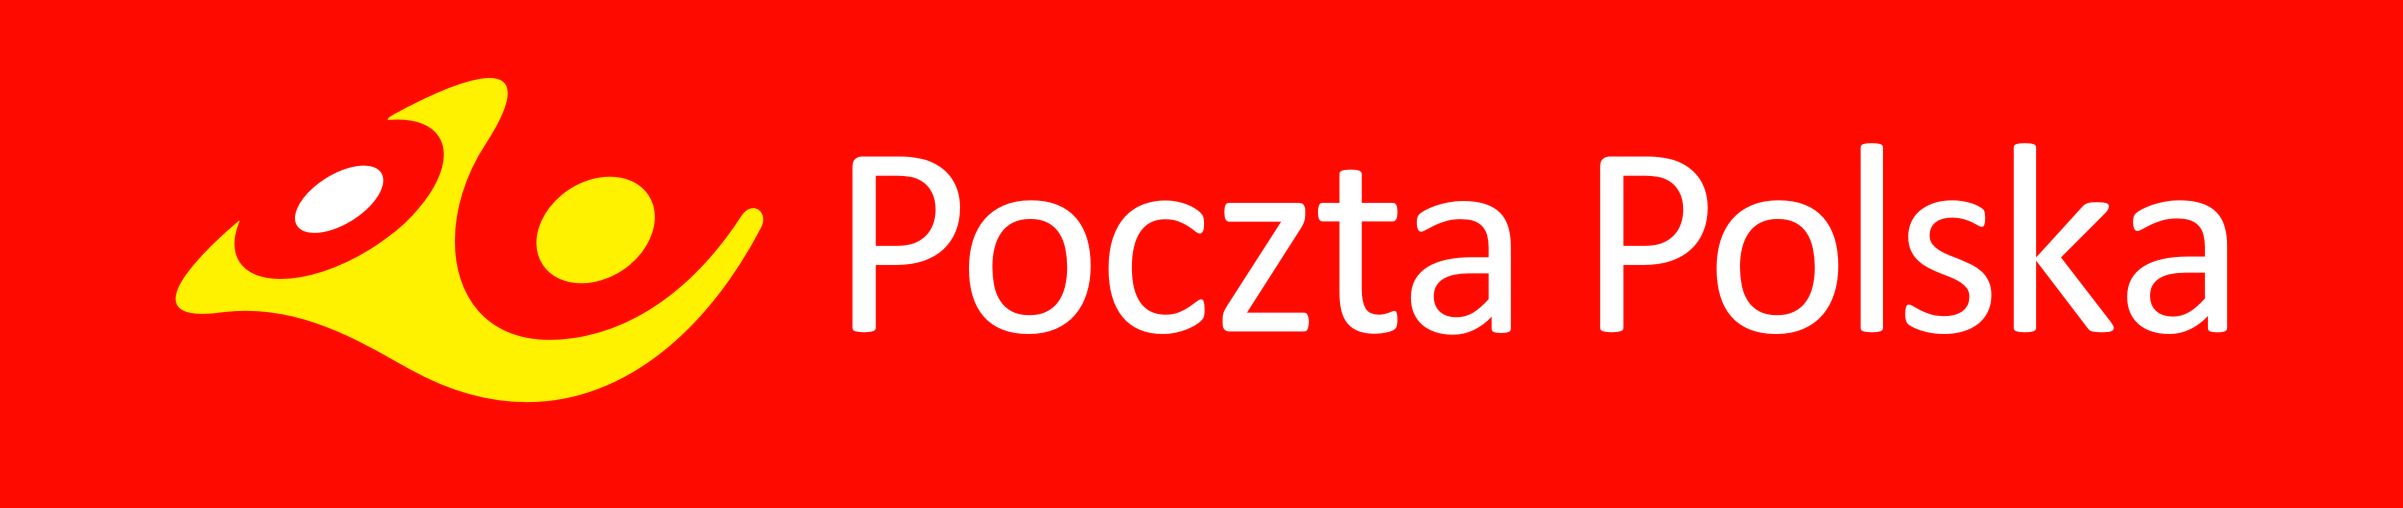 logo Poczty polskiej